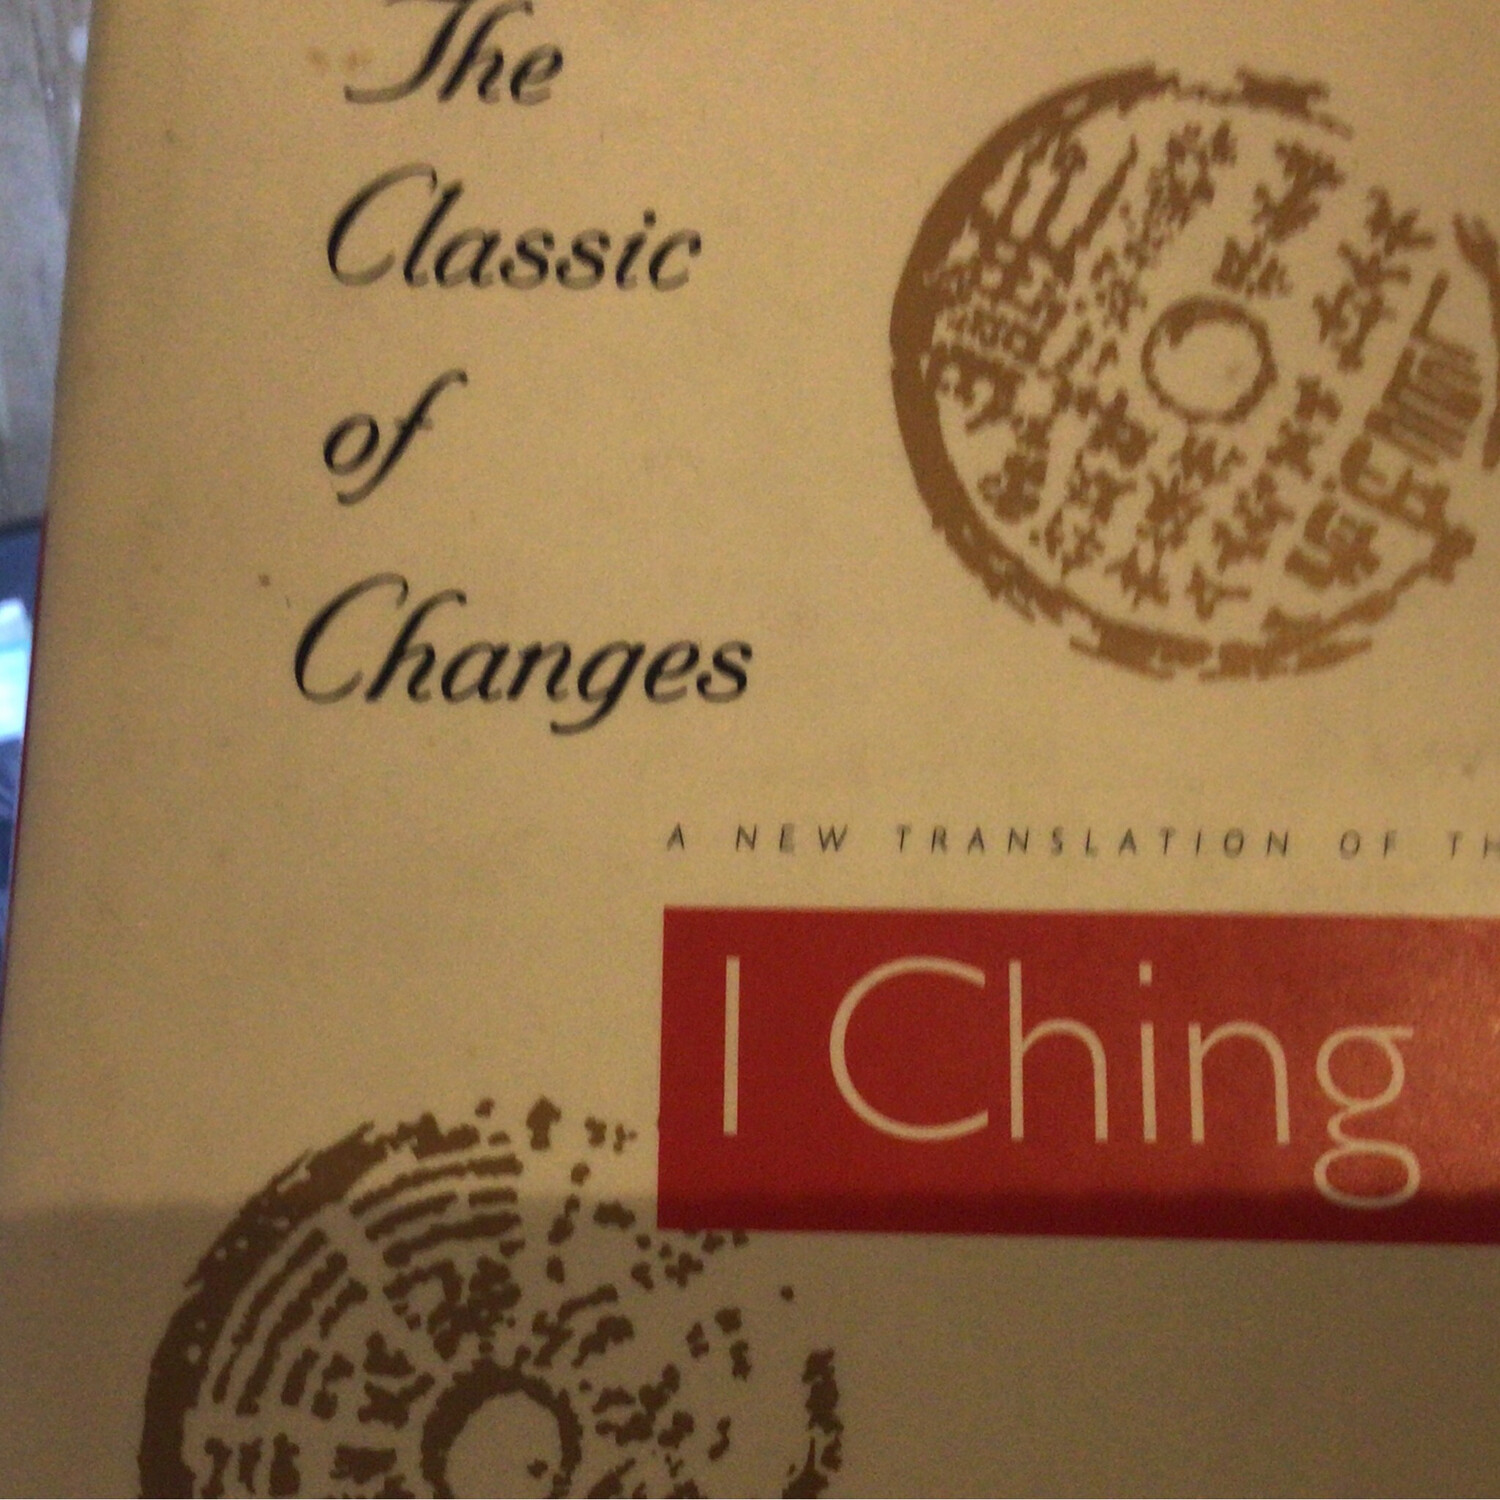 Books I Ching (*C)